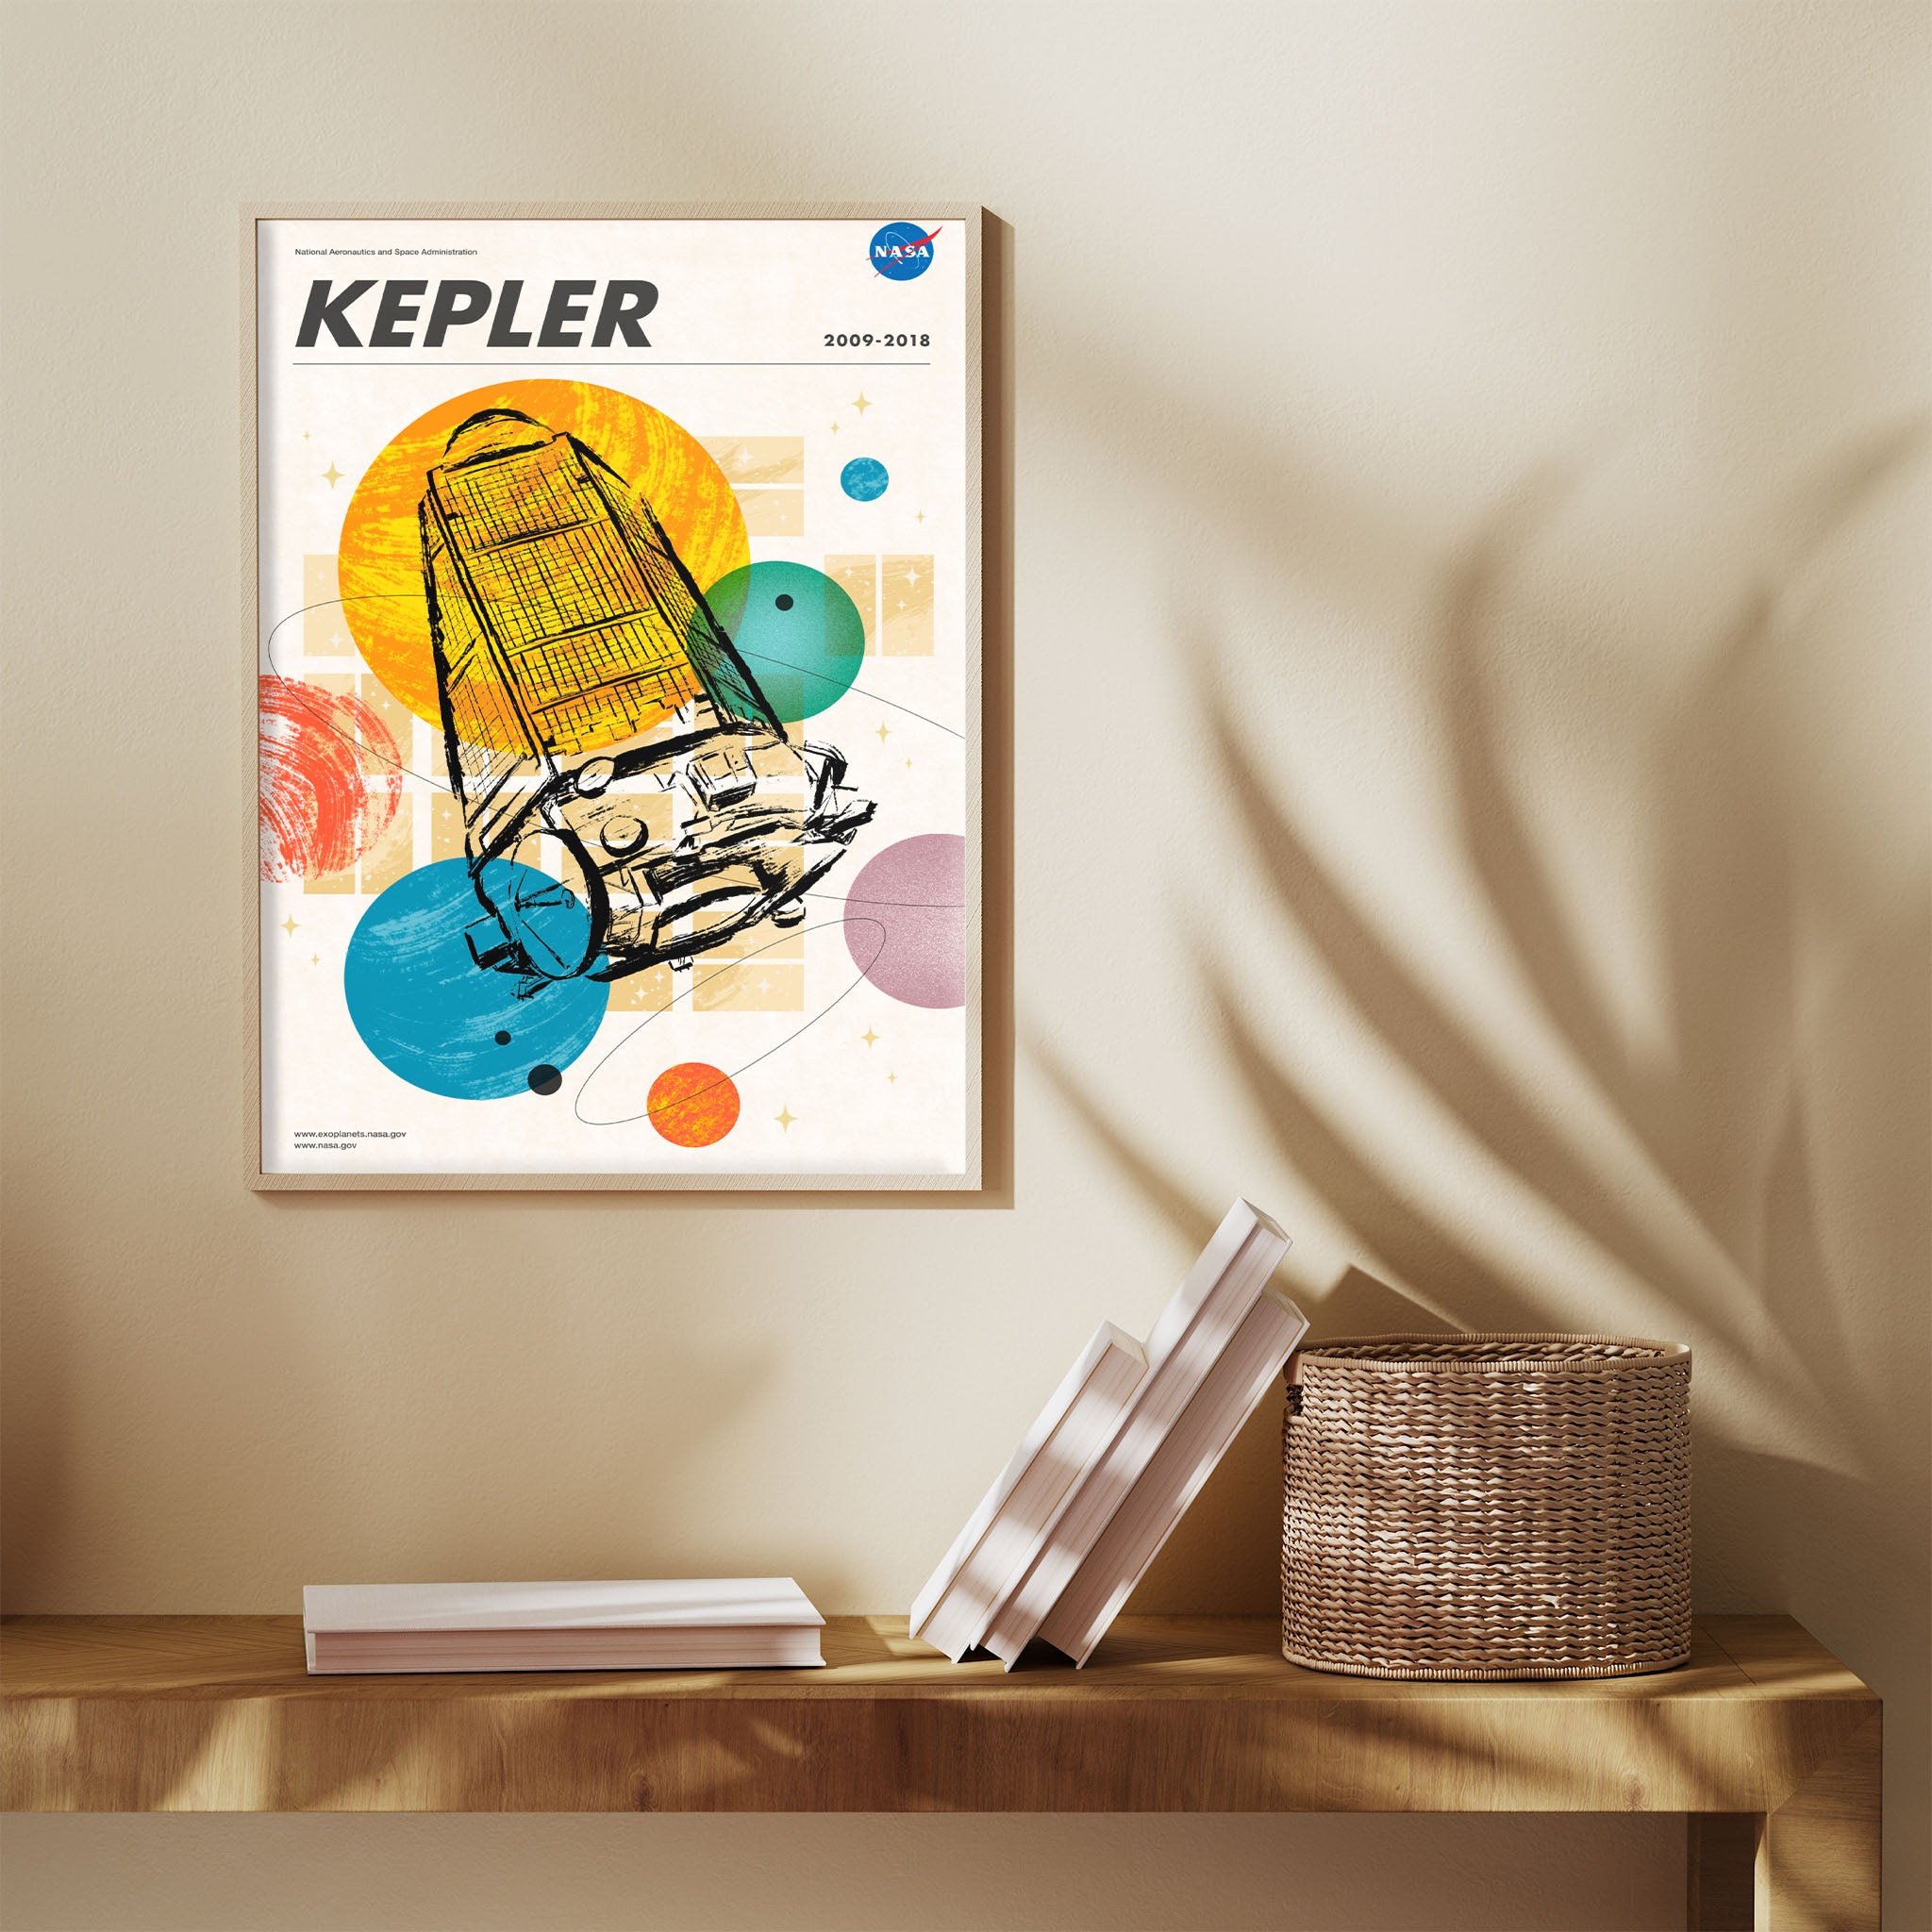 Kepler - Visions of the Future NASA